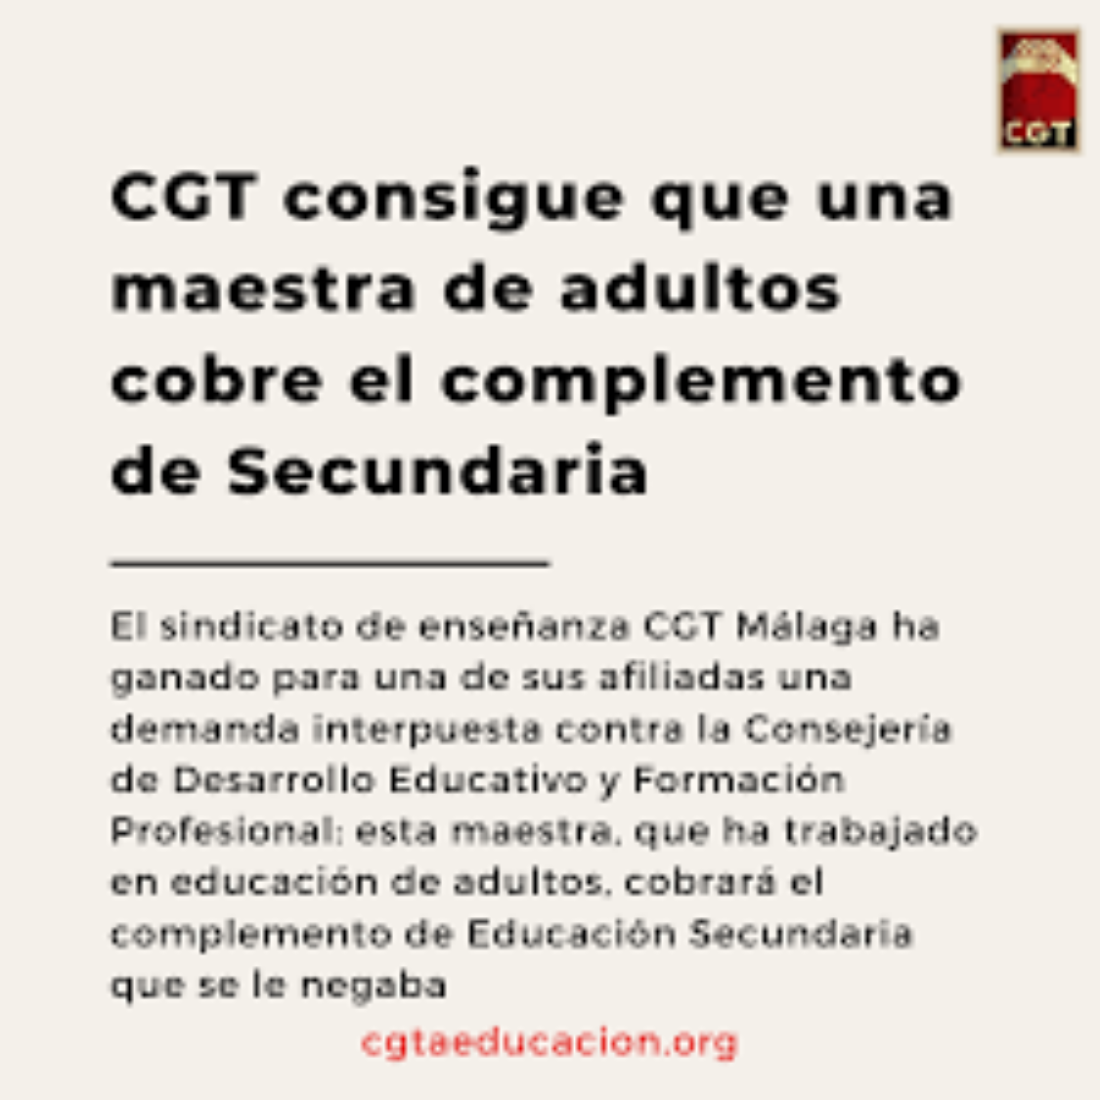 CGT consigue que una maestra de adultos cobre el complemento de Secundaria